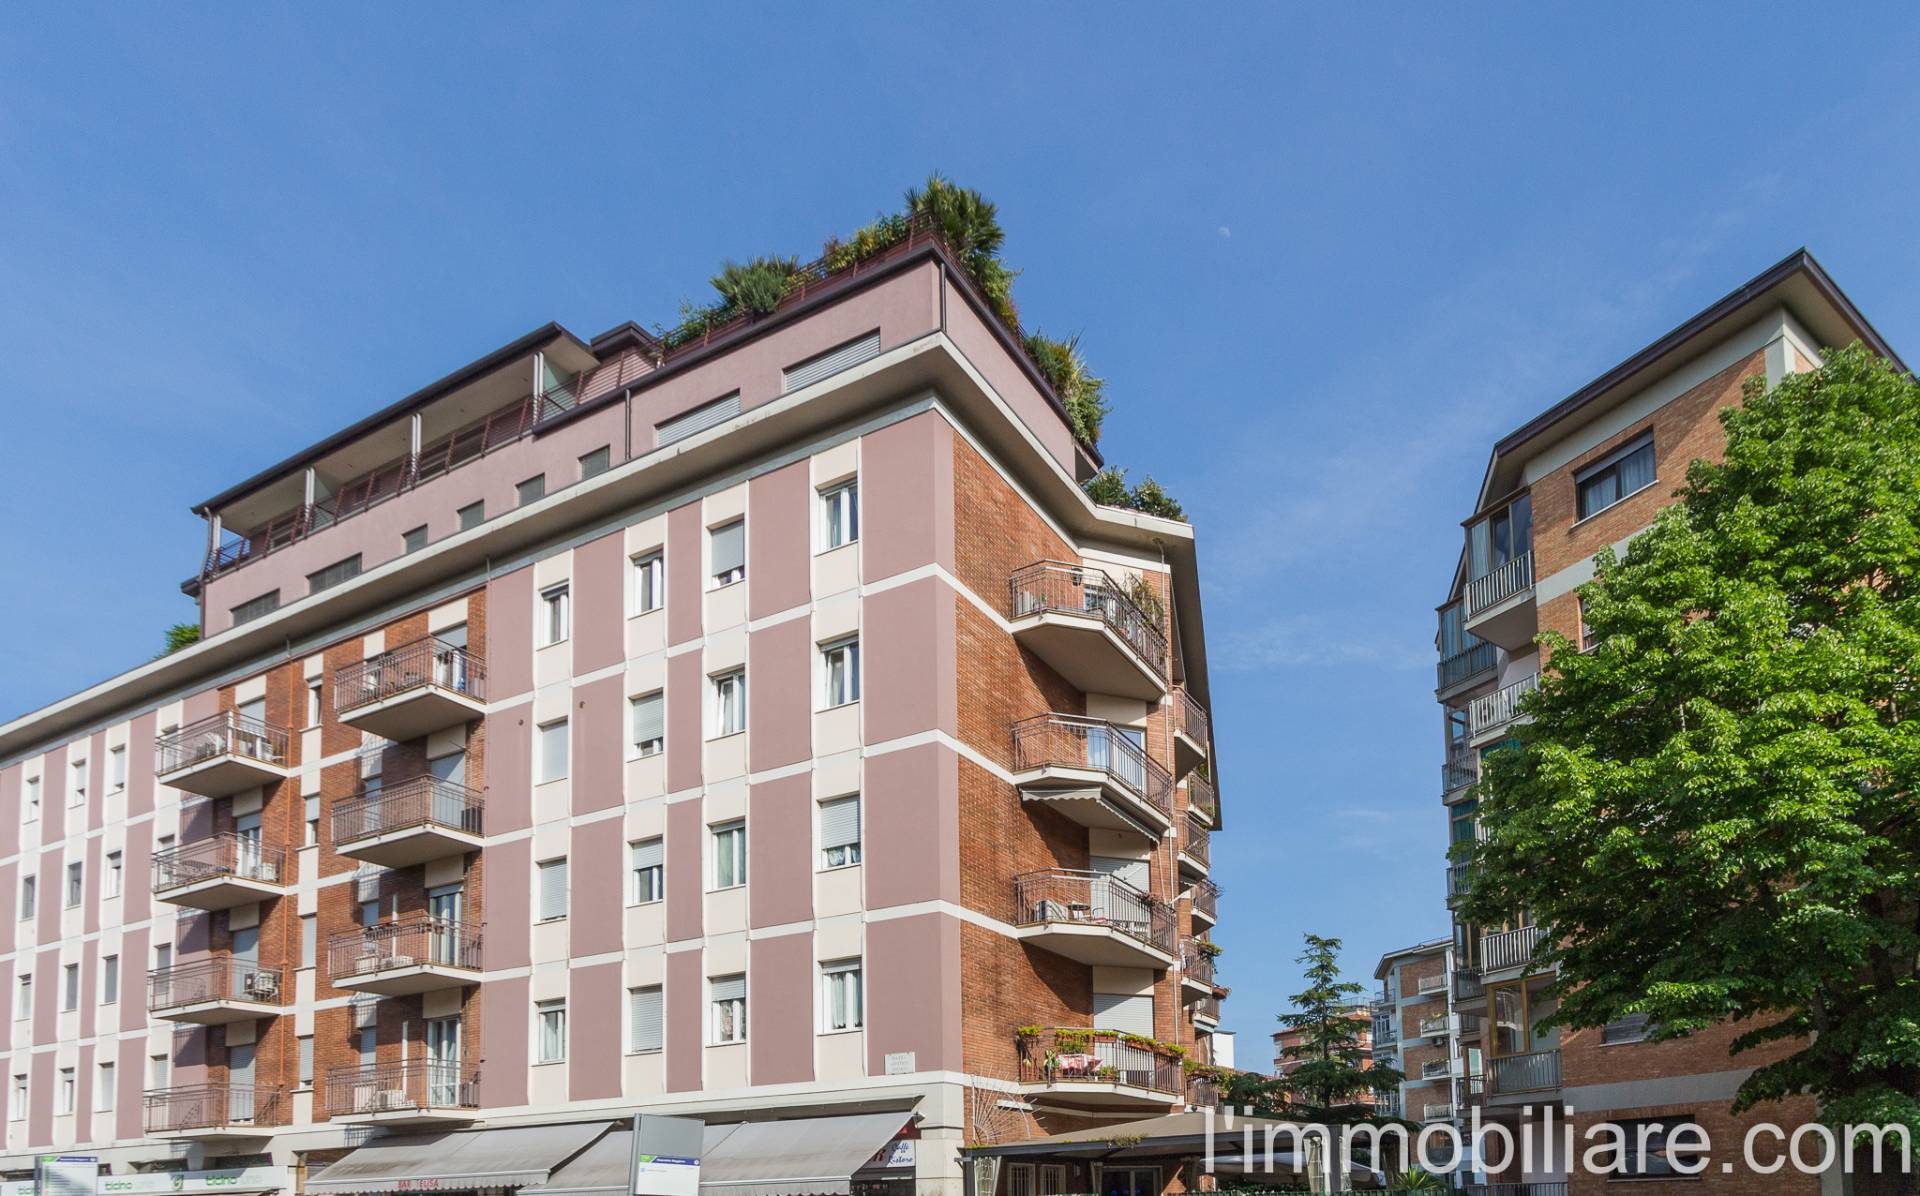 Appartamento in Vendita a Verona: 2 locali, 55 mq - Foto 11